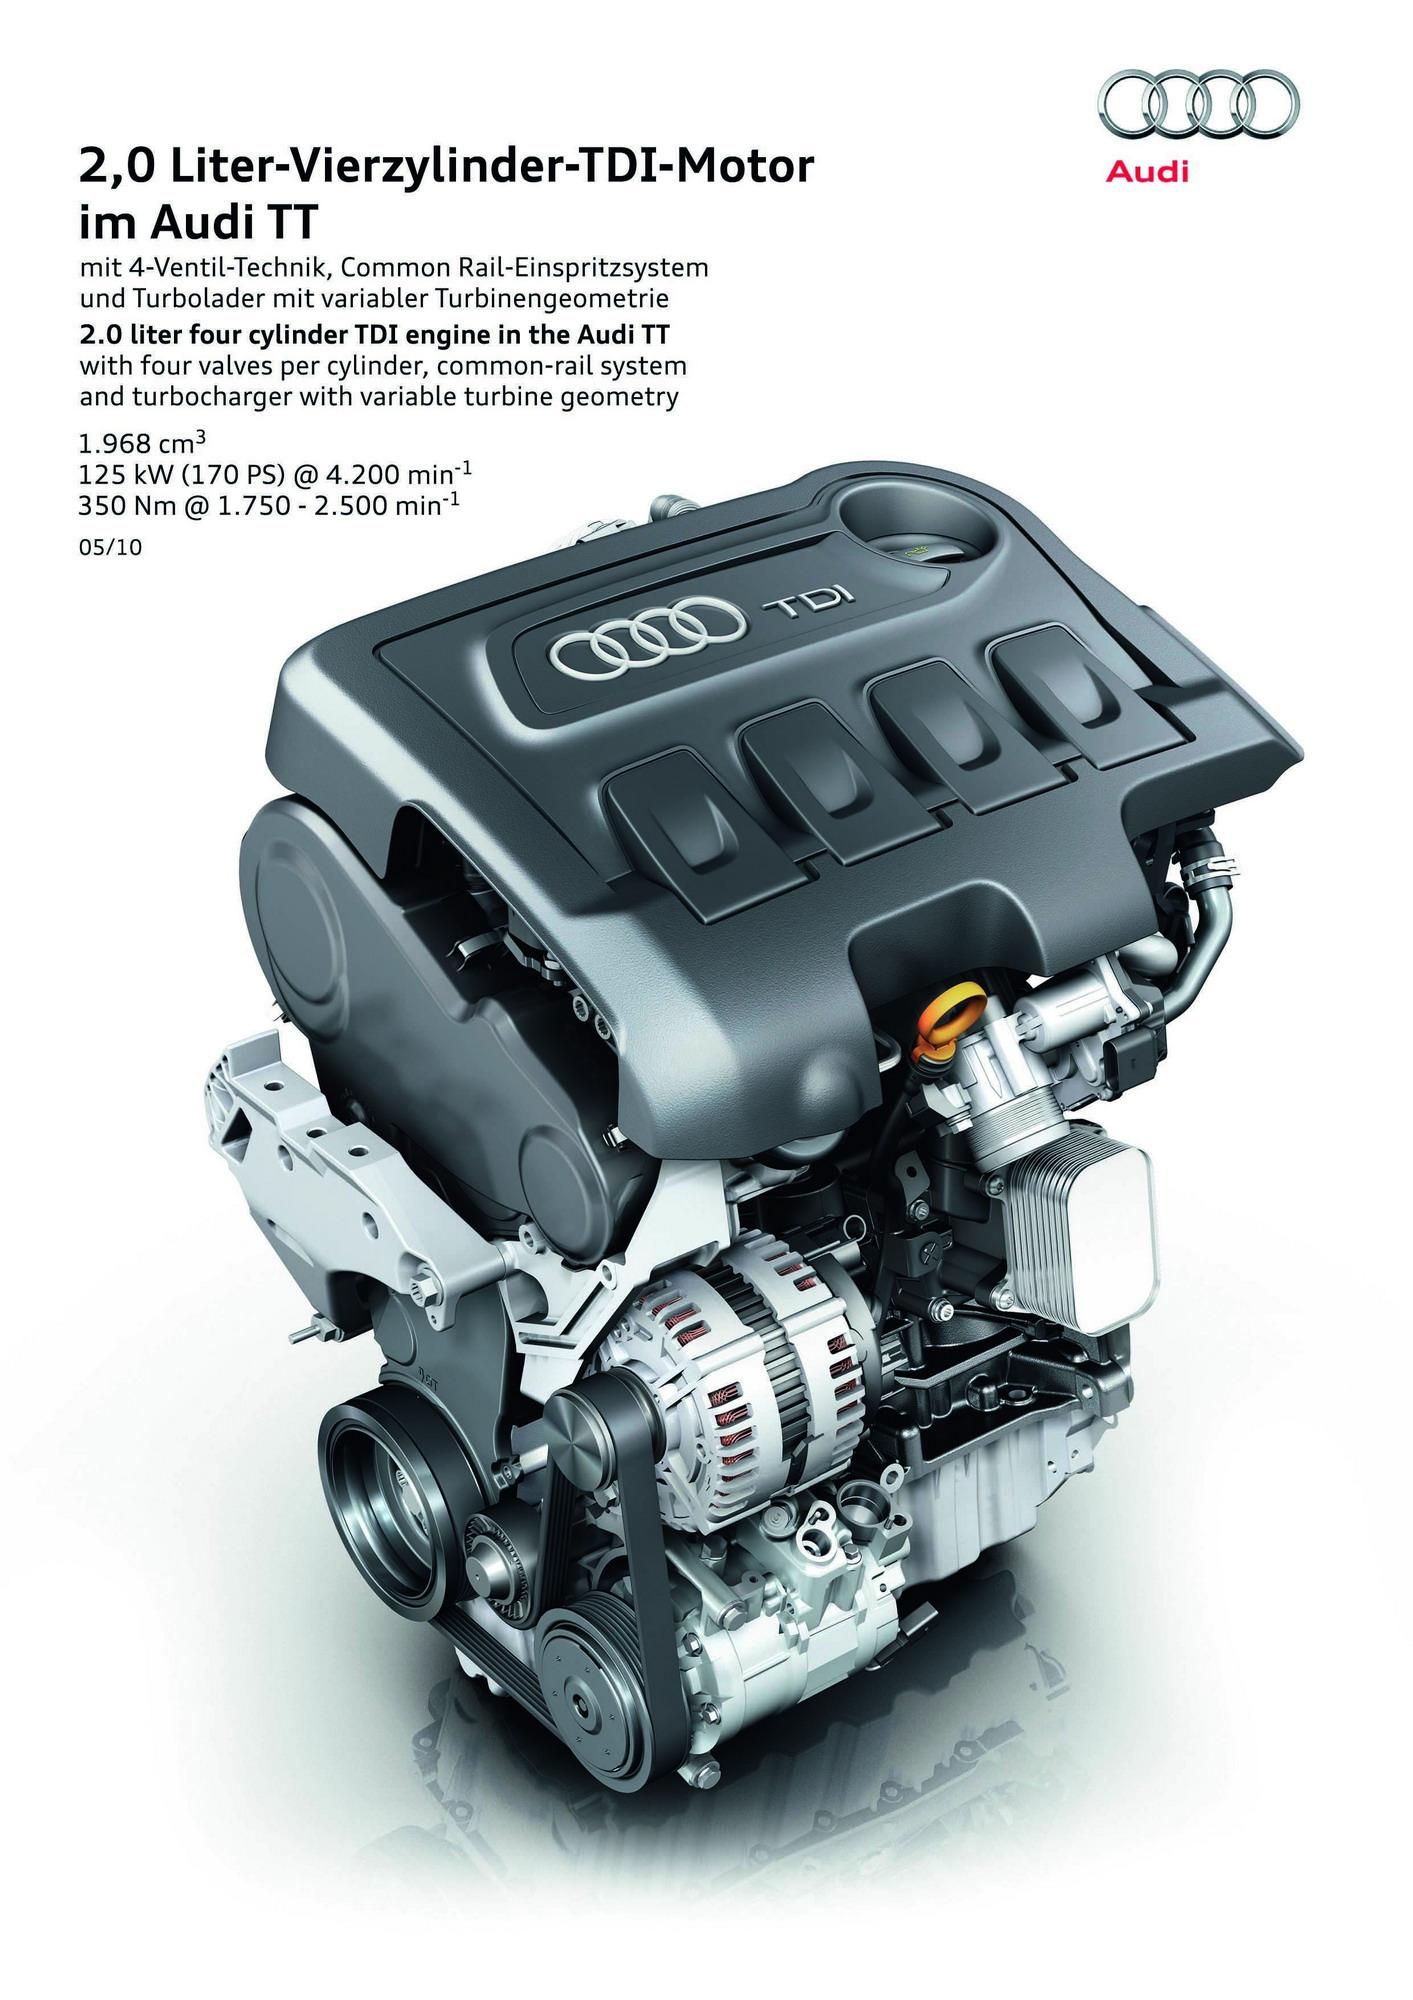 2007 - 2012 Audi TT